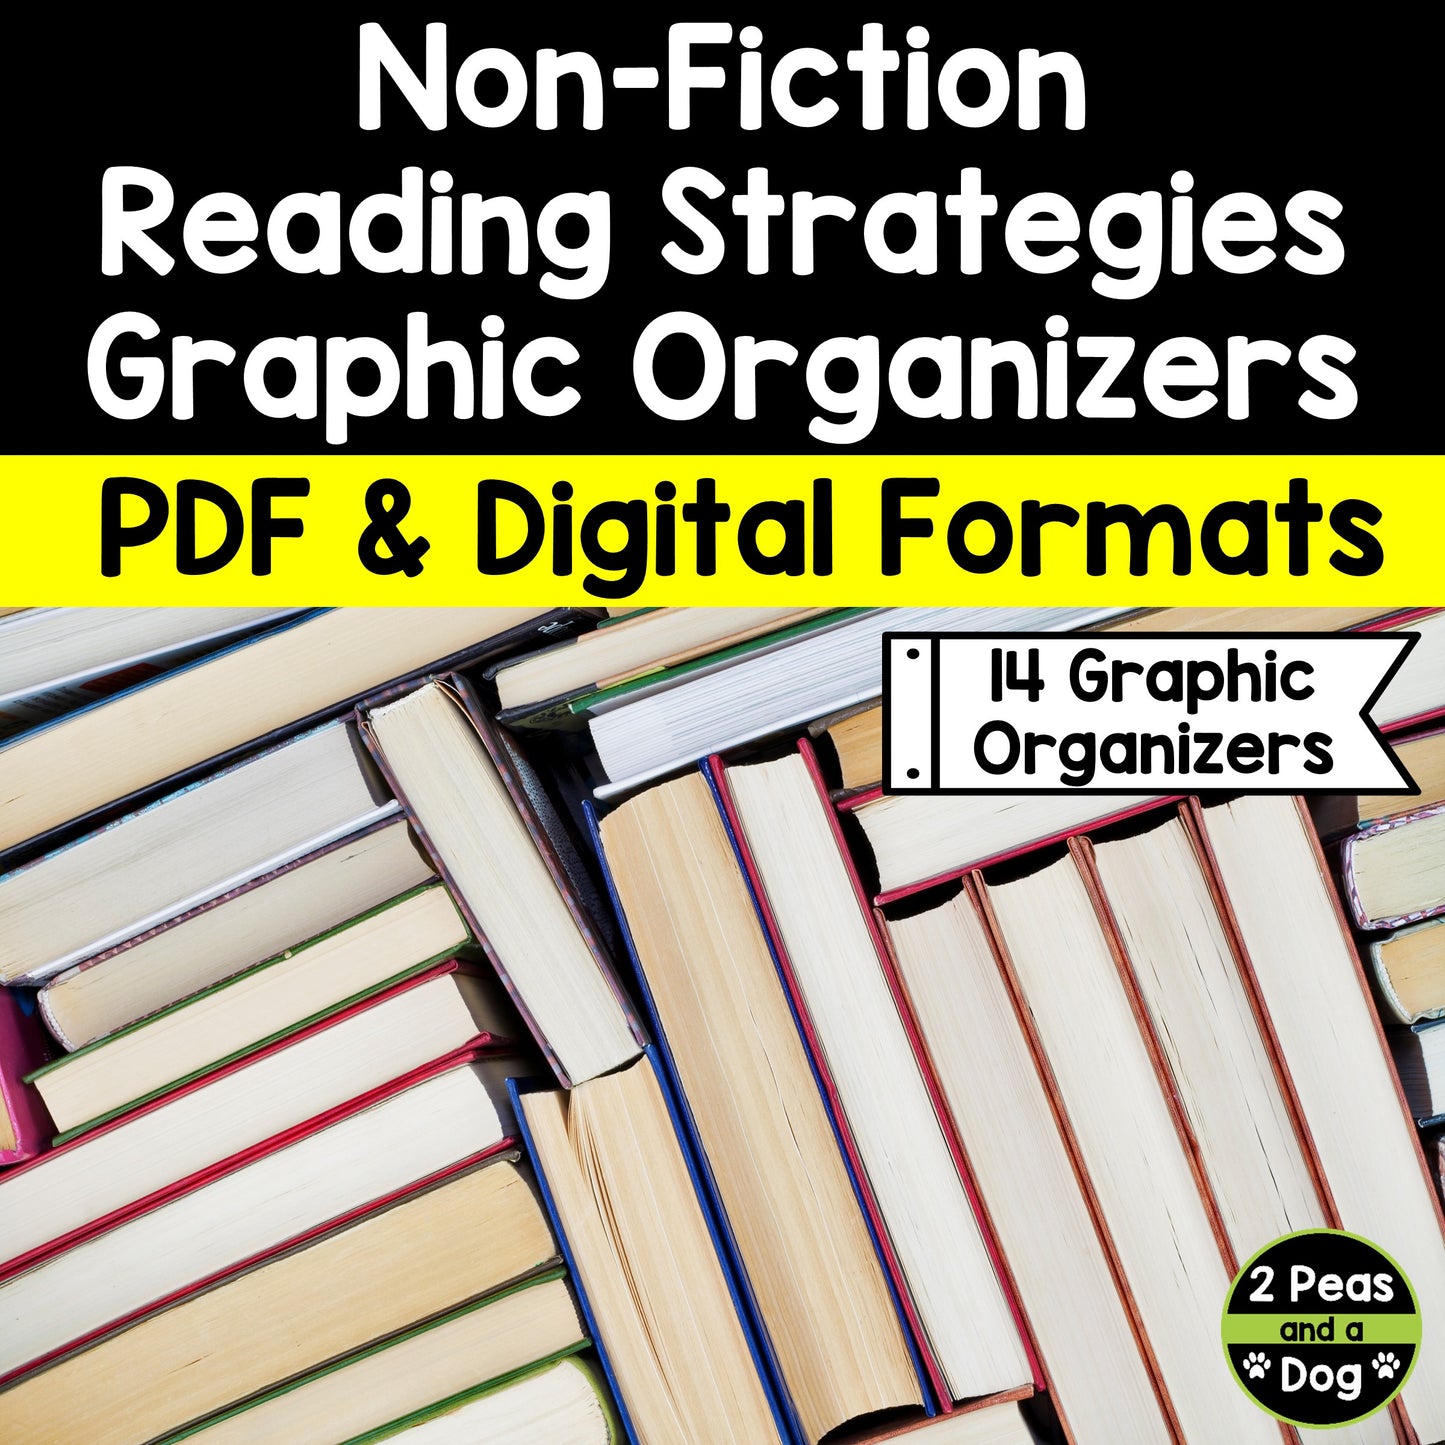 Non-Fiction Graphic Organizers